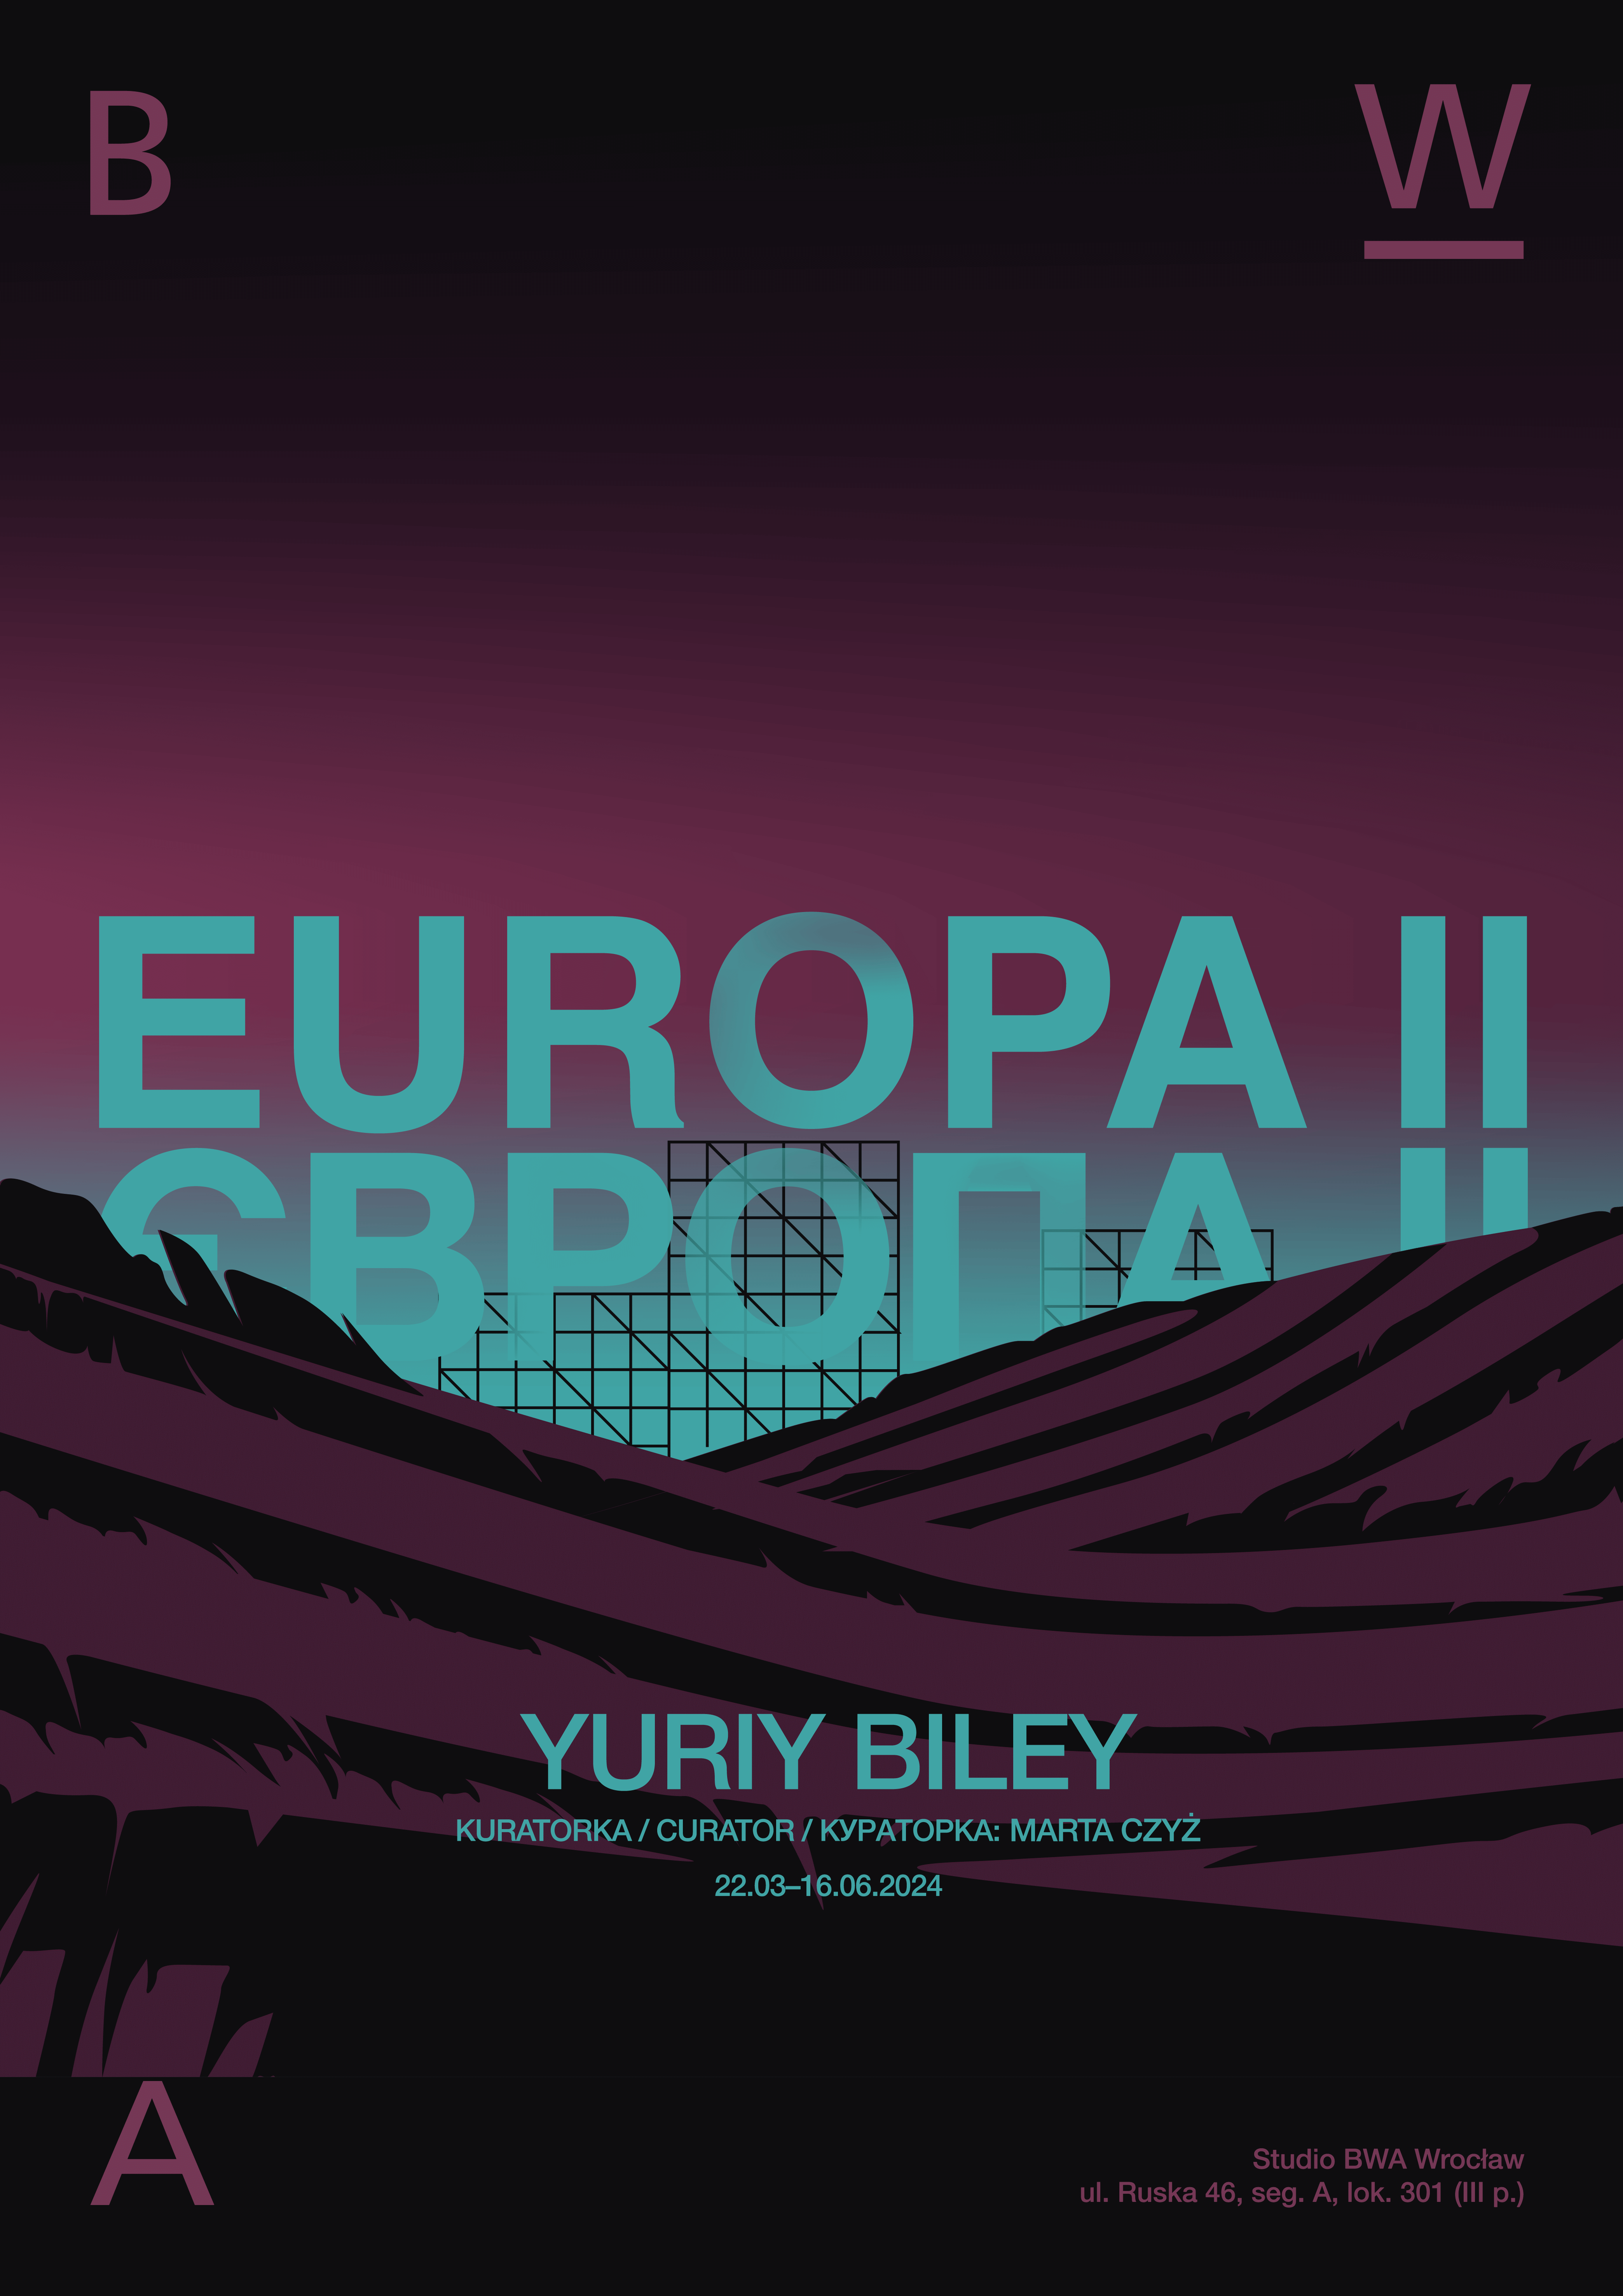 Plakat do wystawy Europa dwa w postaci grafiki przedstawiającej napis Europa w języku polski mi ukraińskim, wyłaniający się ponad łąkami. Plakat w kolorze magenty, czerni i cyjanu